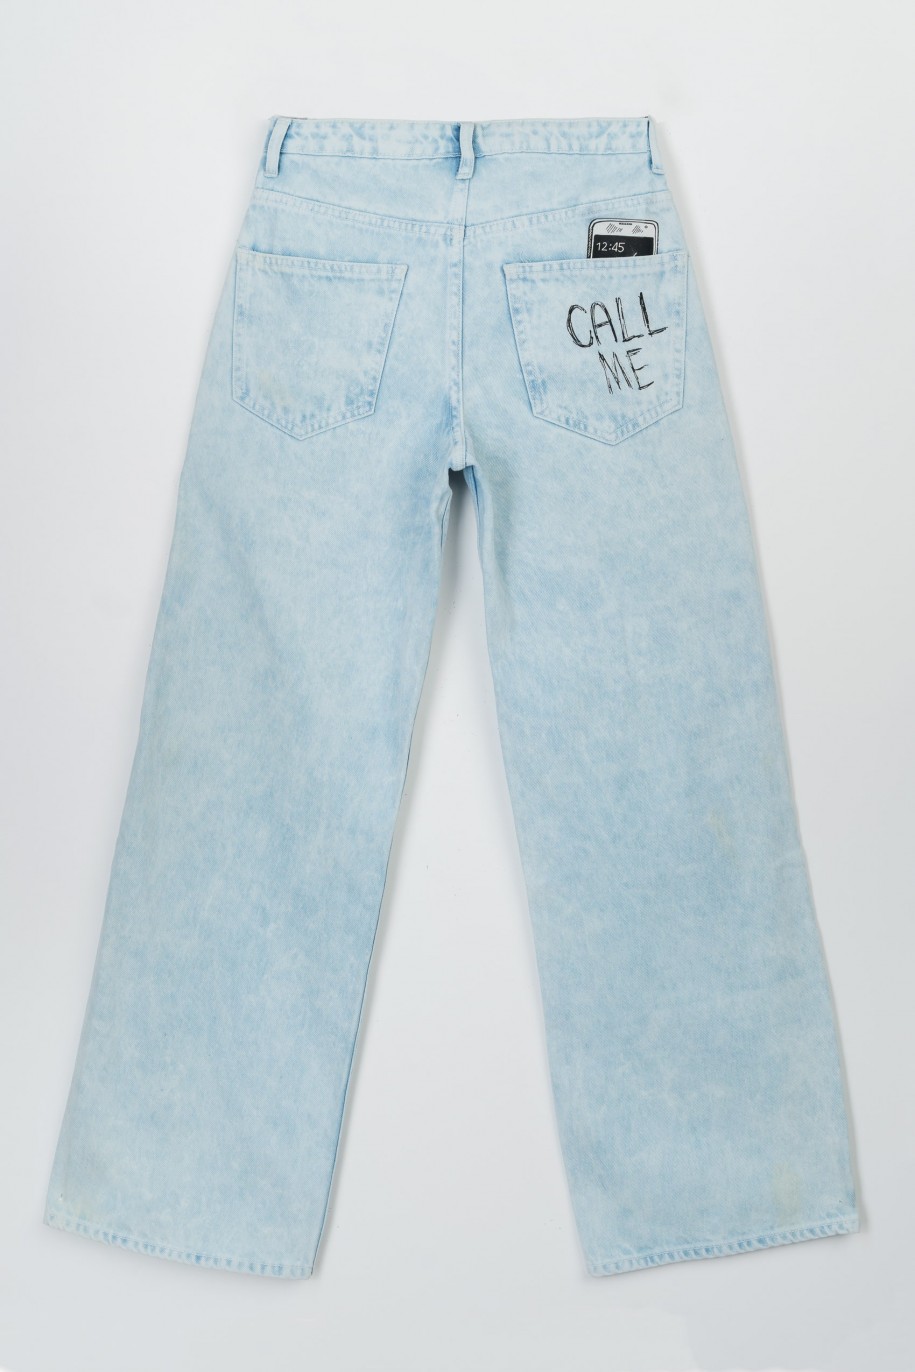 Jasnoniebieskie jeansowe spodnie z szerokimi nogawkami z kolorowymi nadrukami - 47562